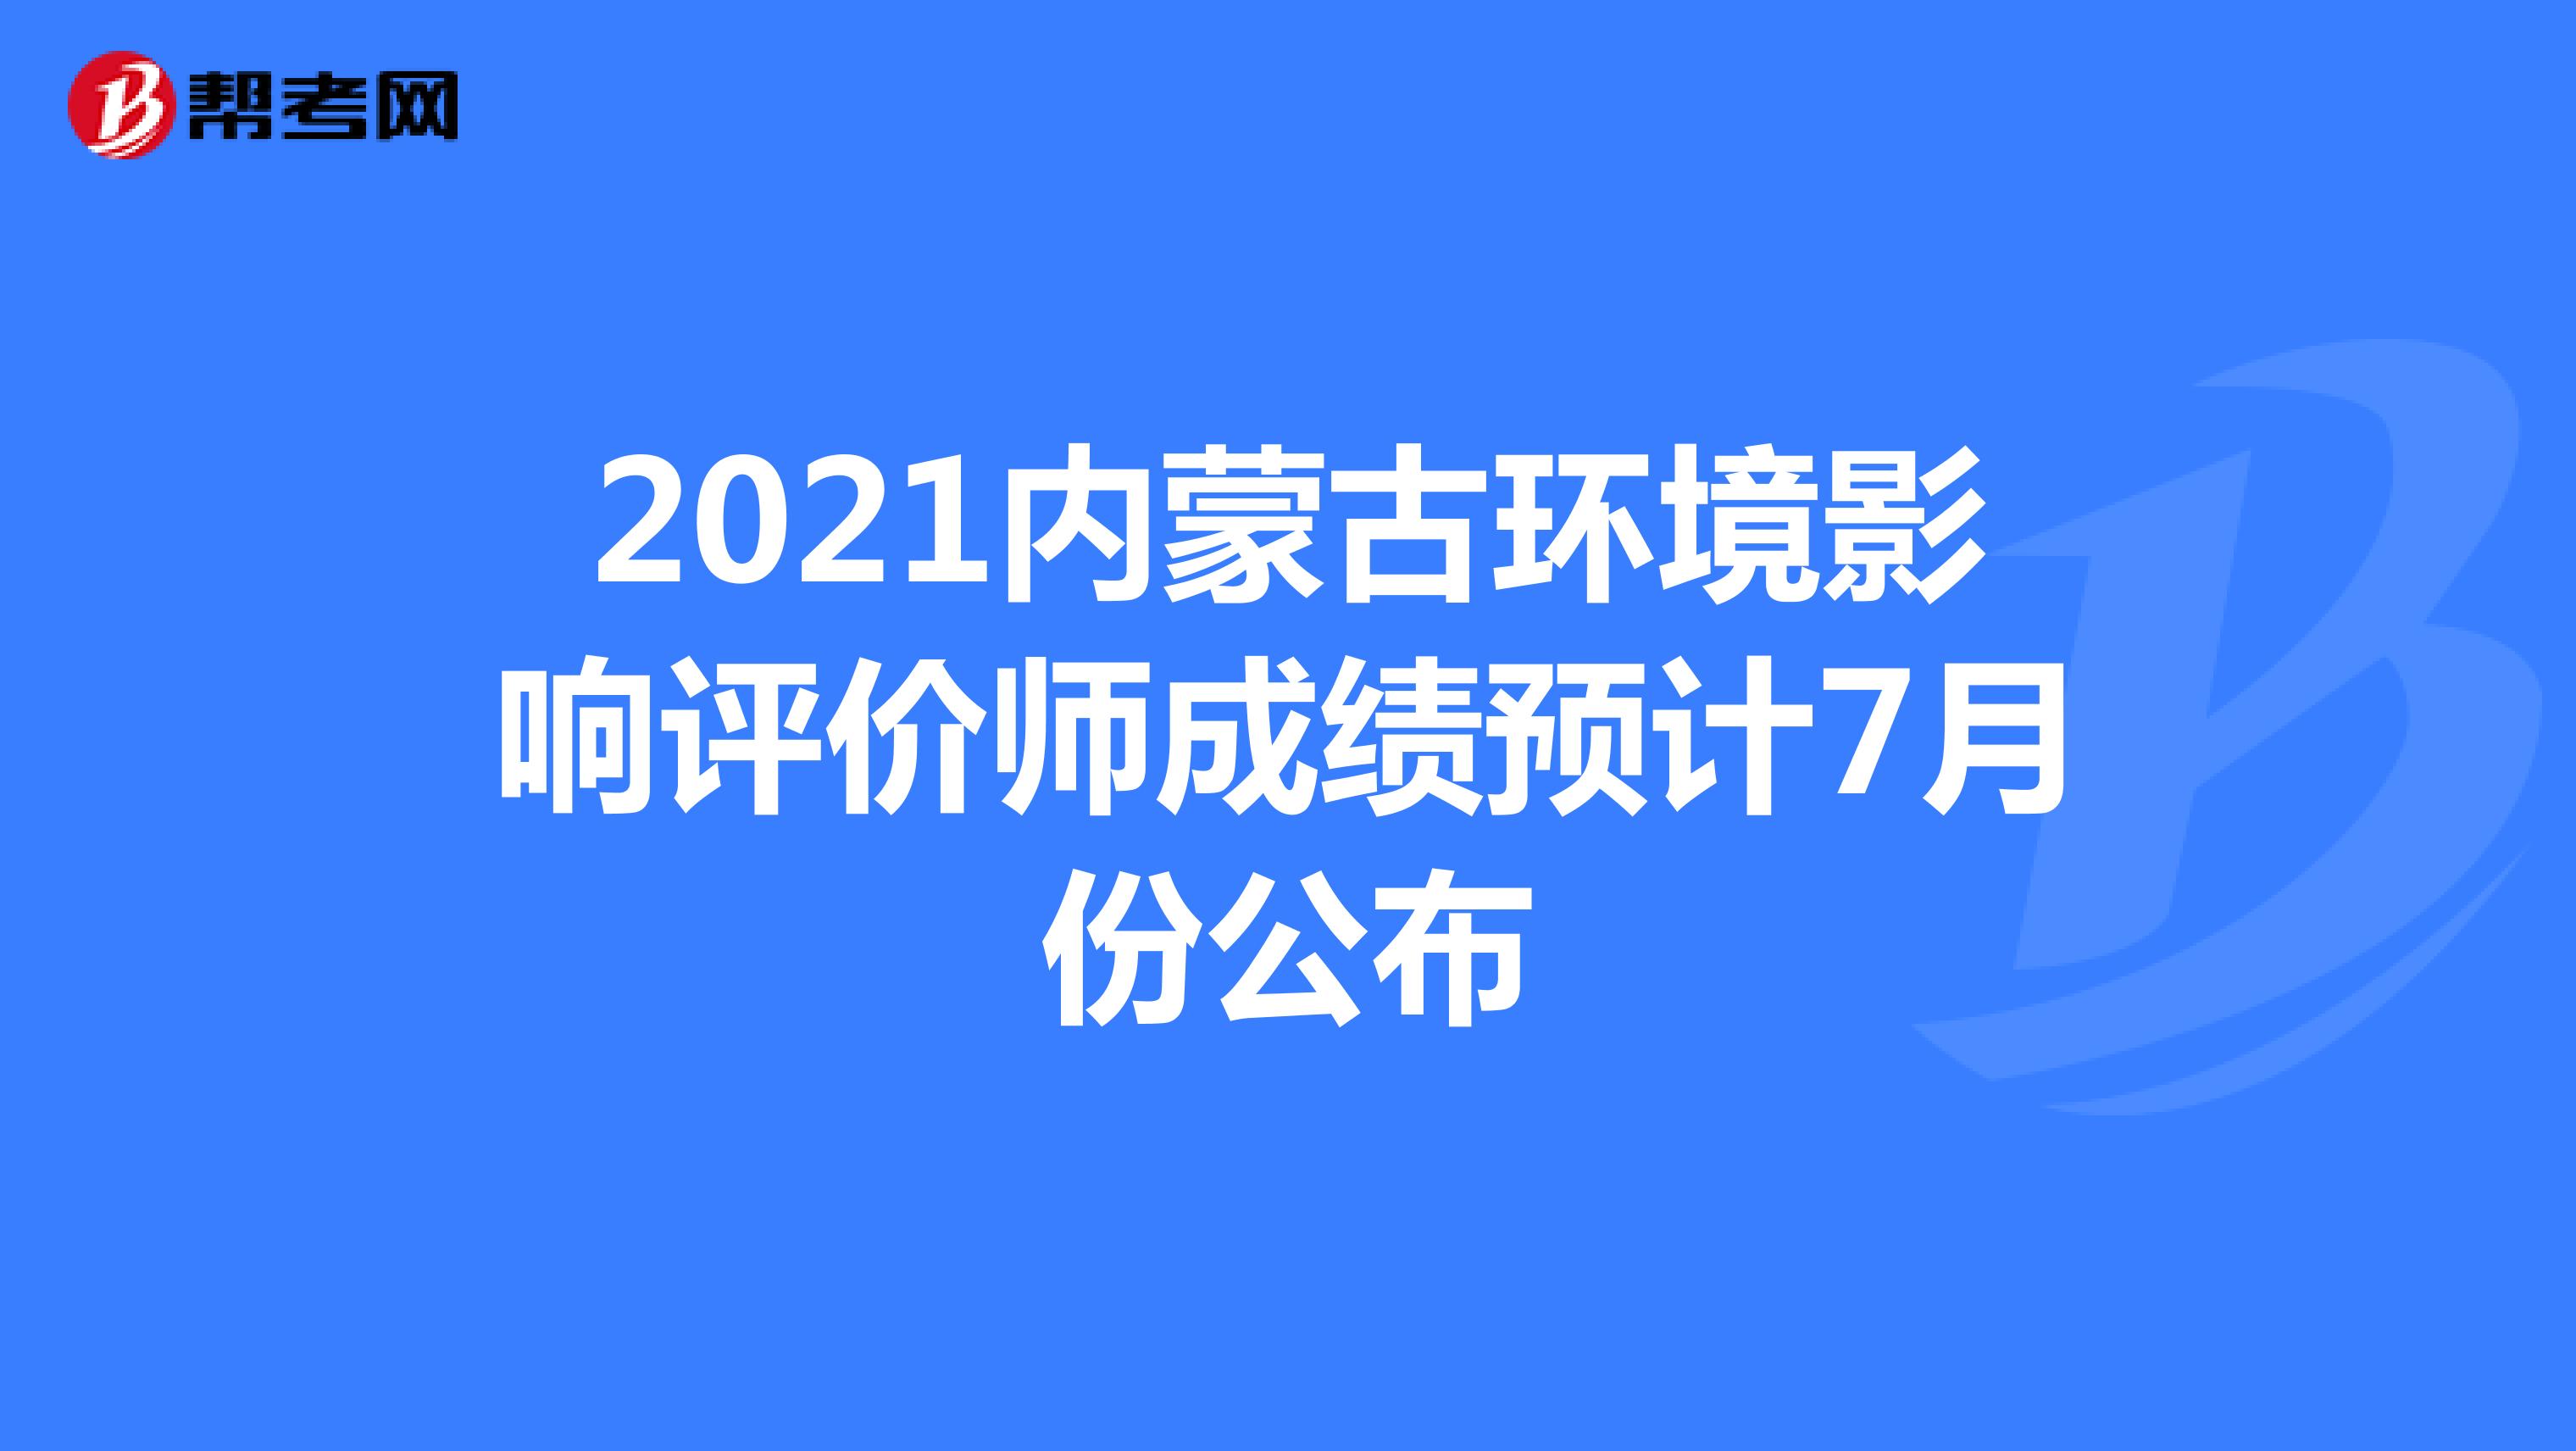 2021内蒙古环境影响评价师成绩预计7月份公布